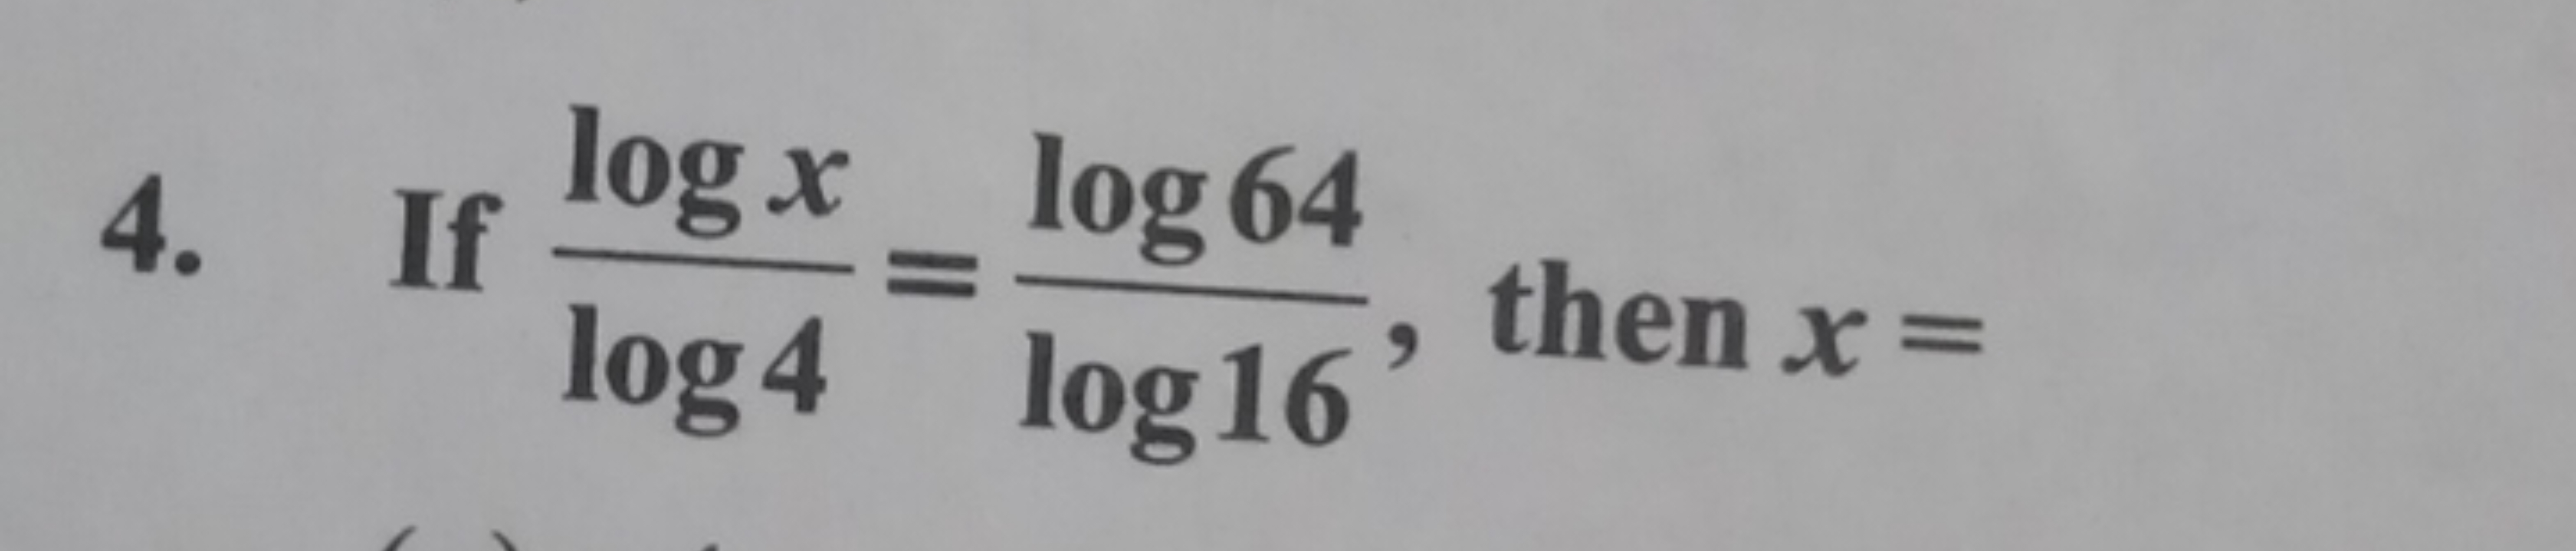 4. If log4logx​=log16log64​, then x=
